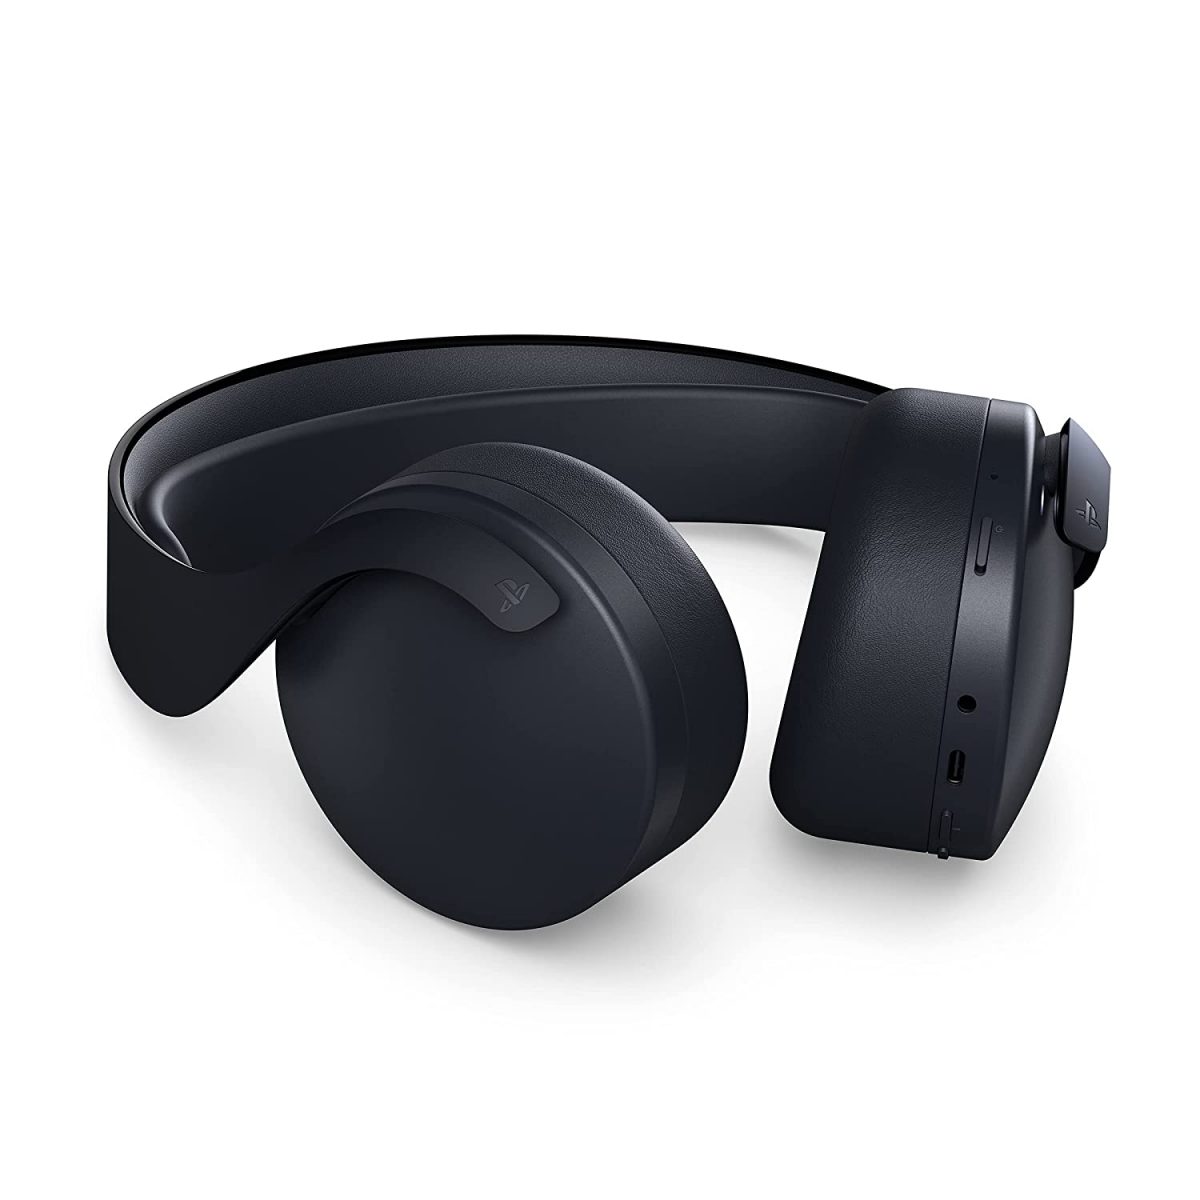 Pulse 3D Wireless Headset: Is It Worth It? (Review) | Robots.net